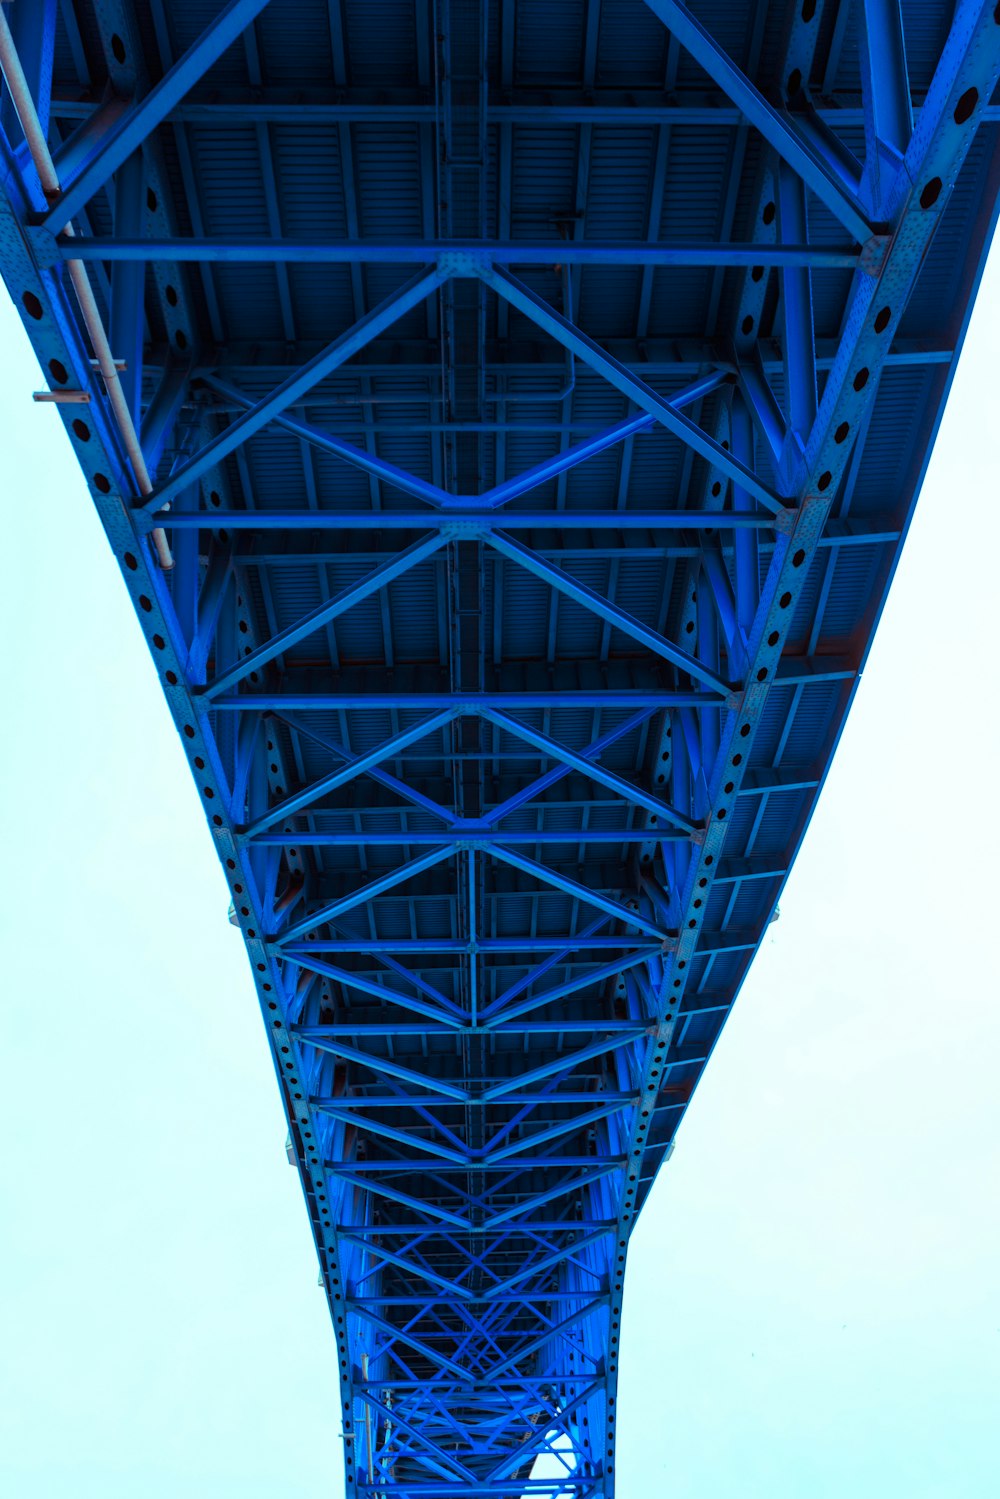 la parte inferior de un puente con una estructura metálica azul